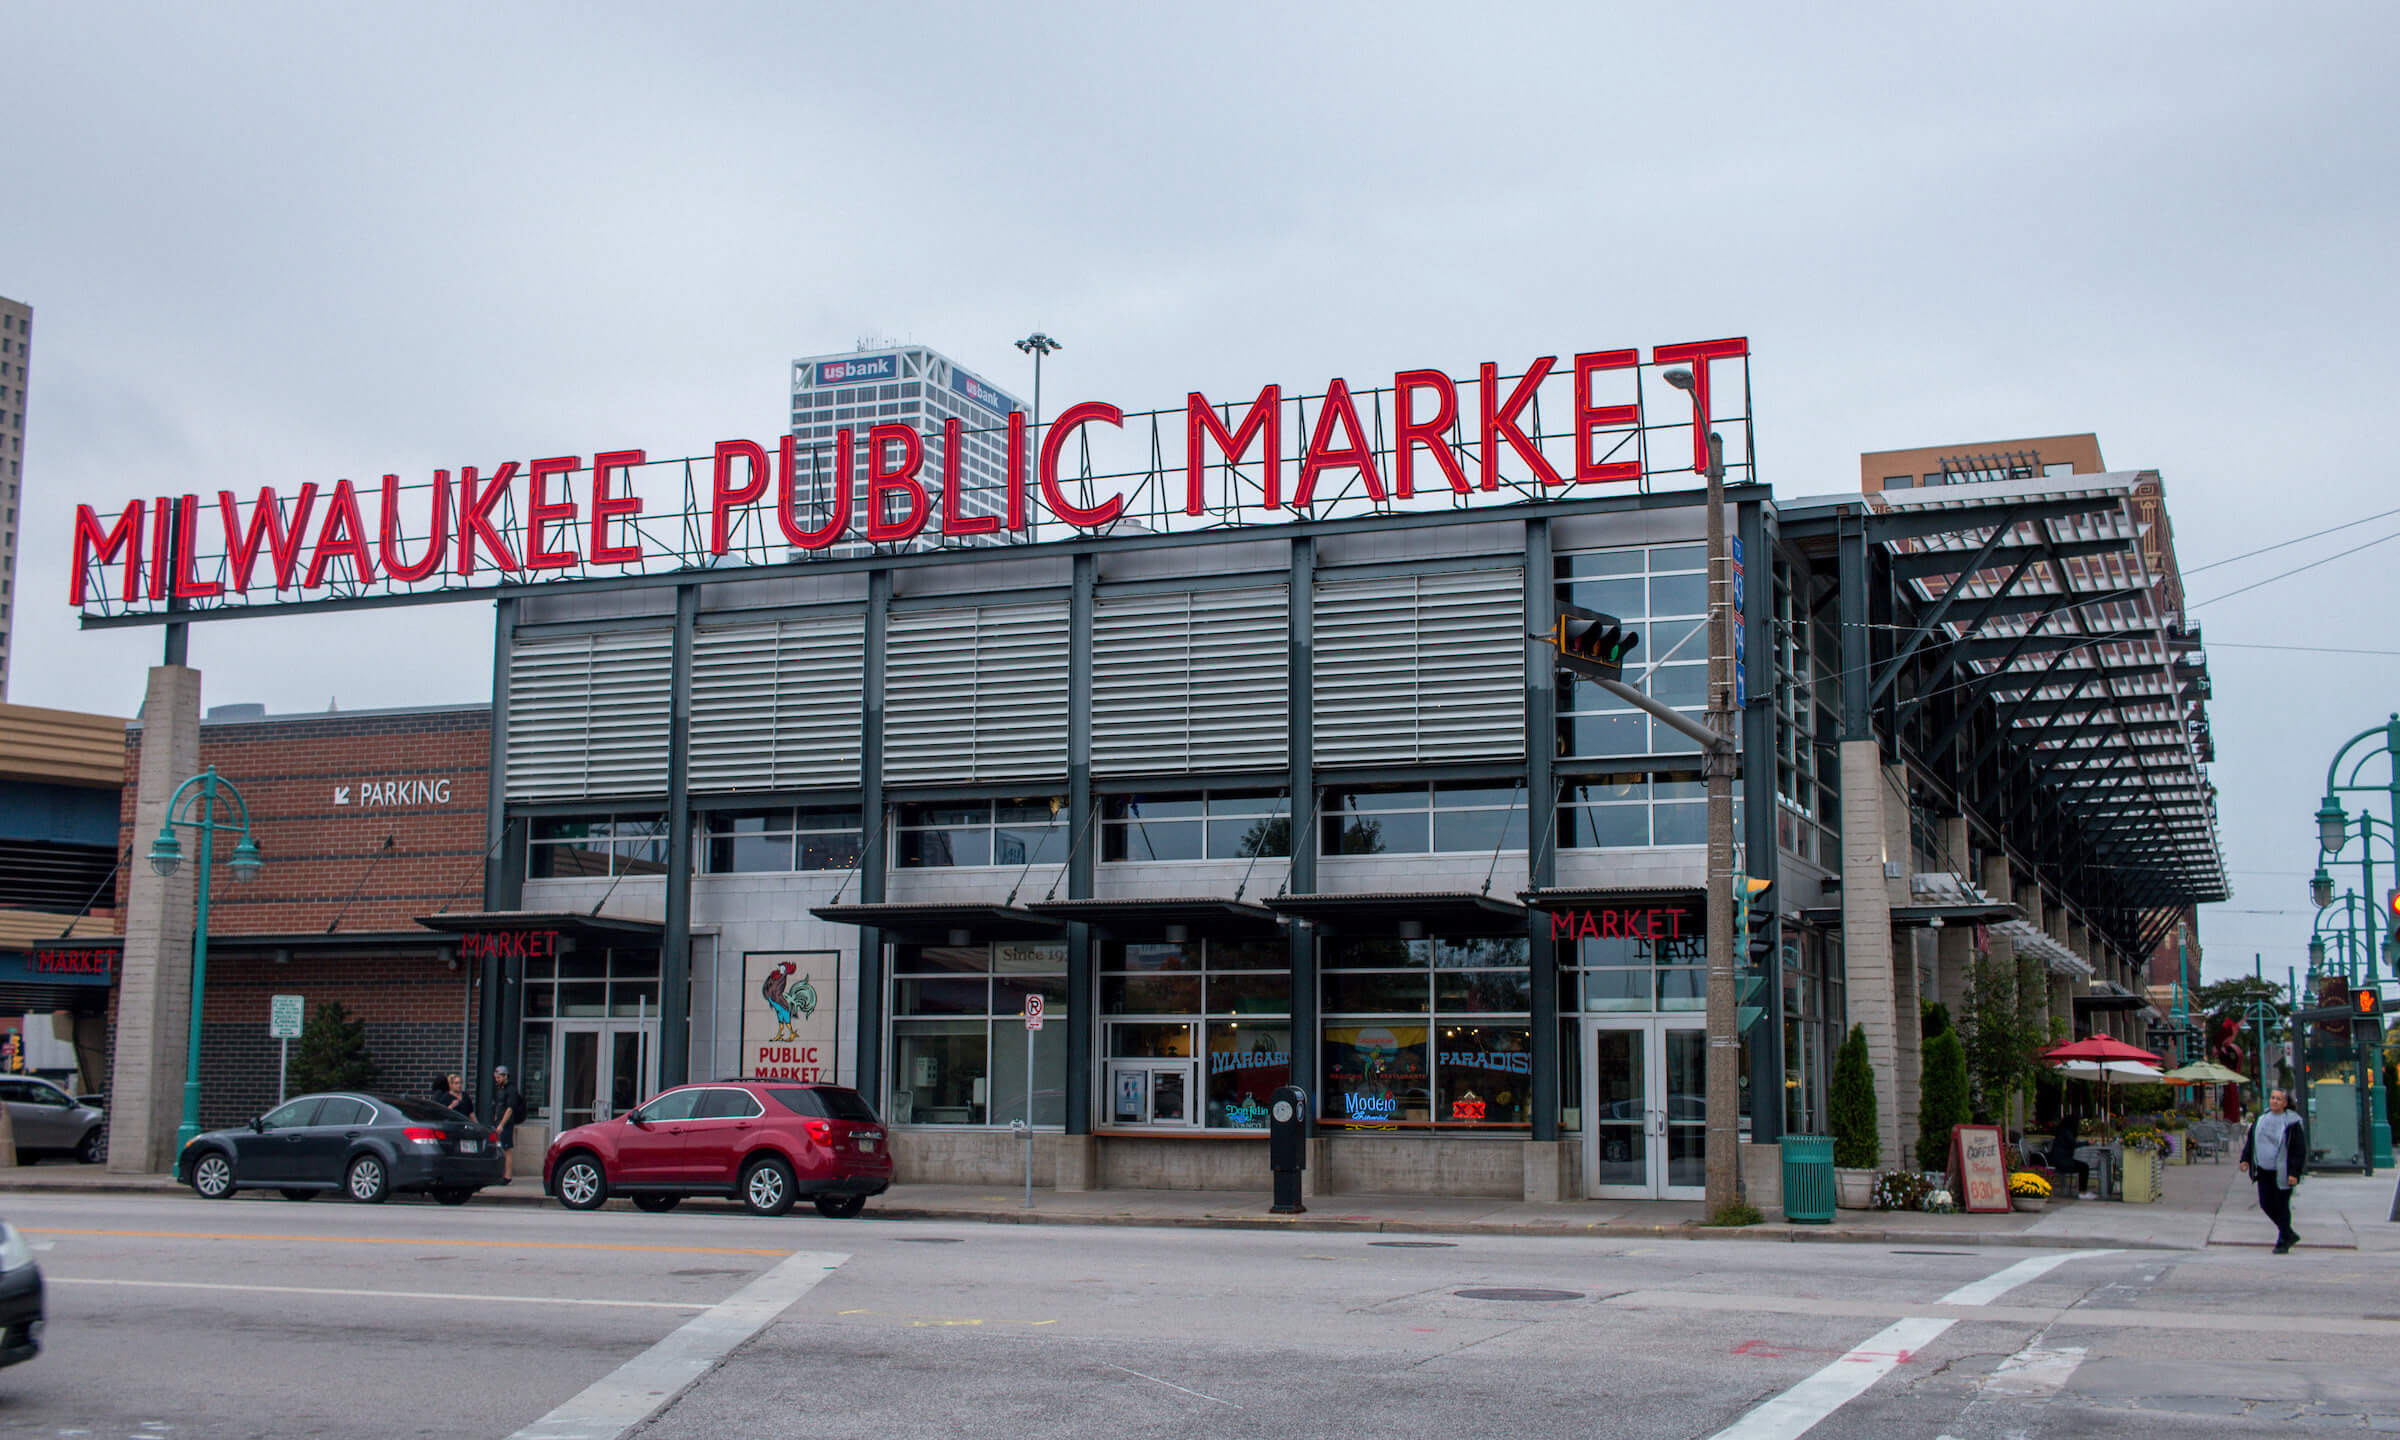 Milwaukee Public Market